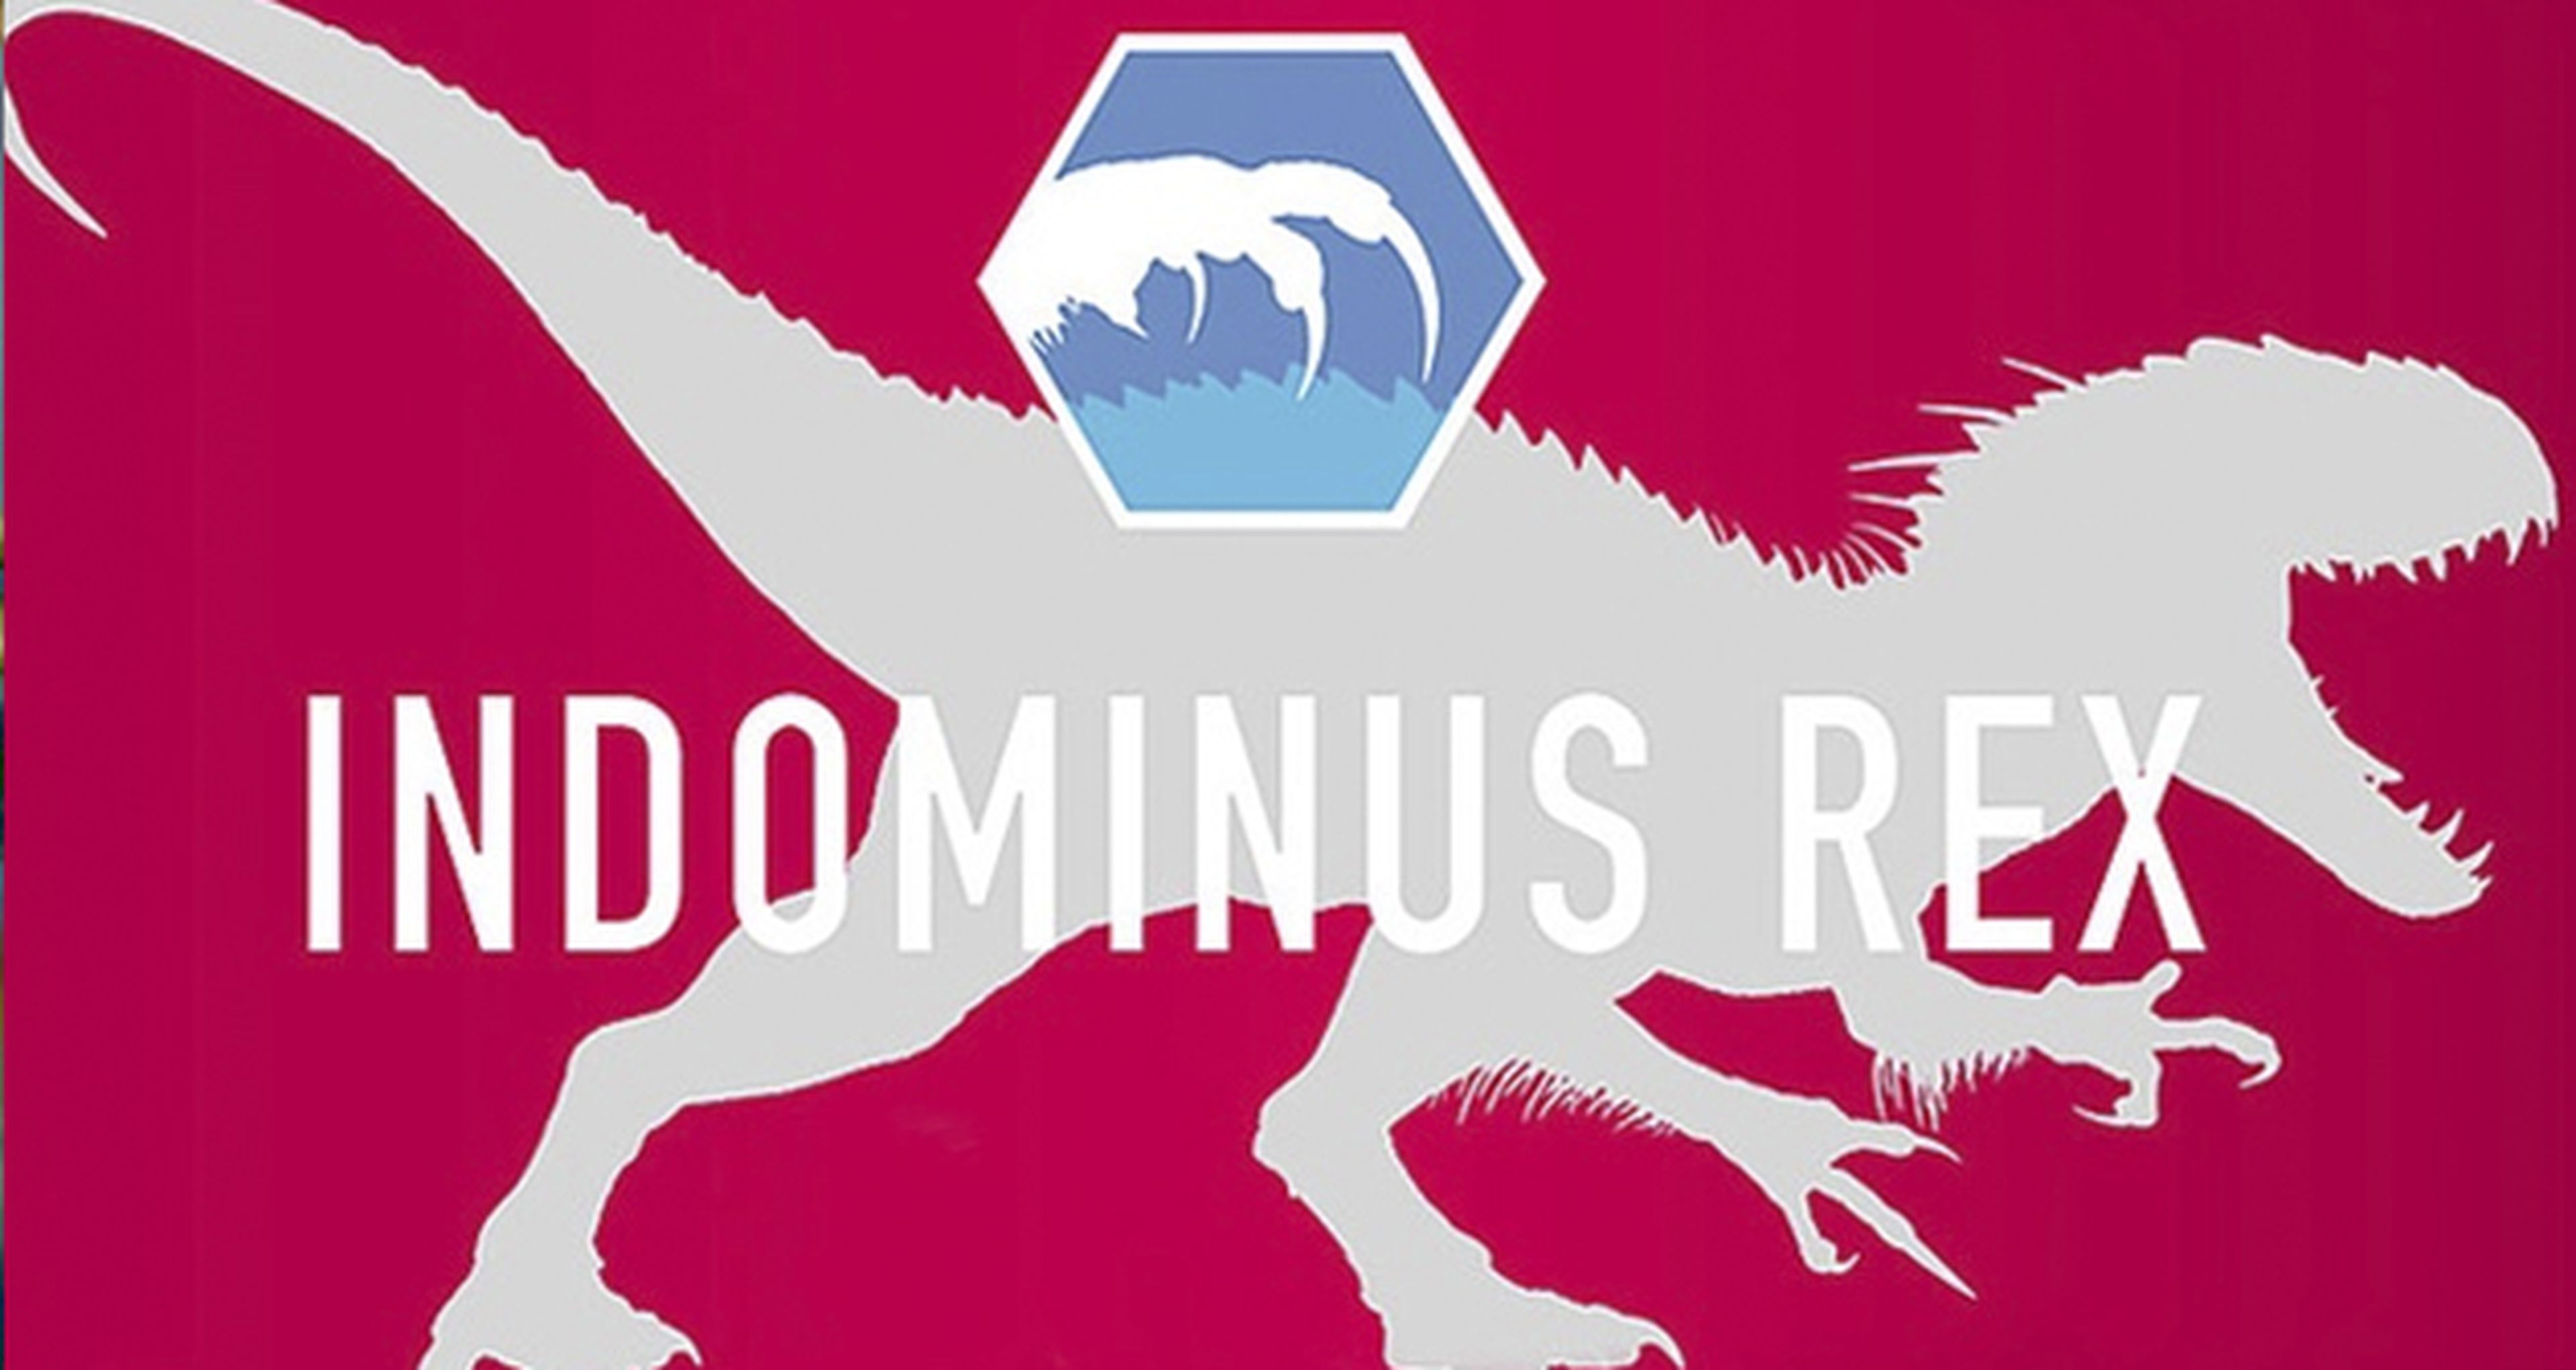 Jurassic World contará con el dino más fiero: el Indominus Rex